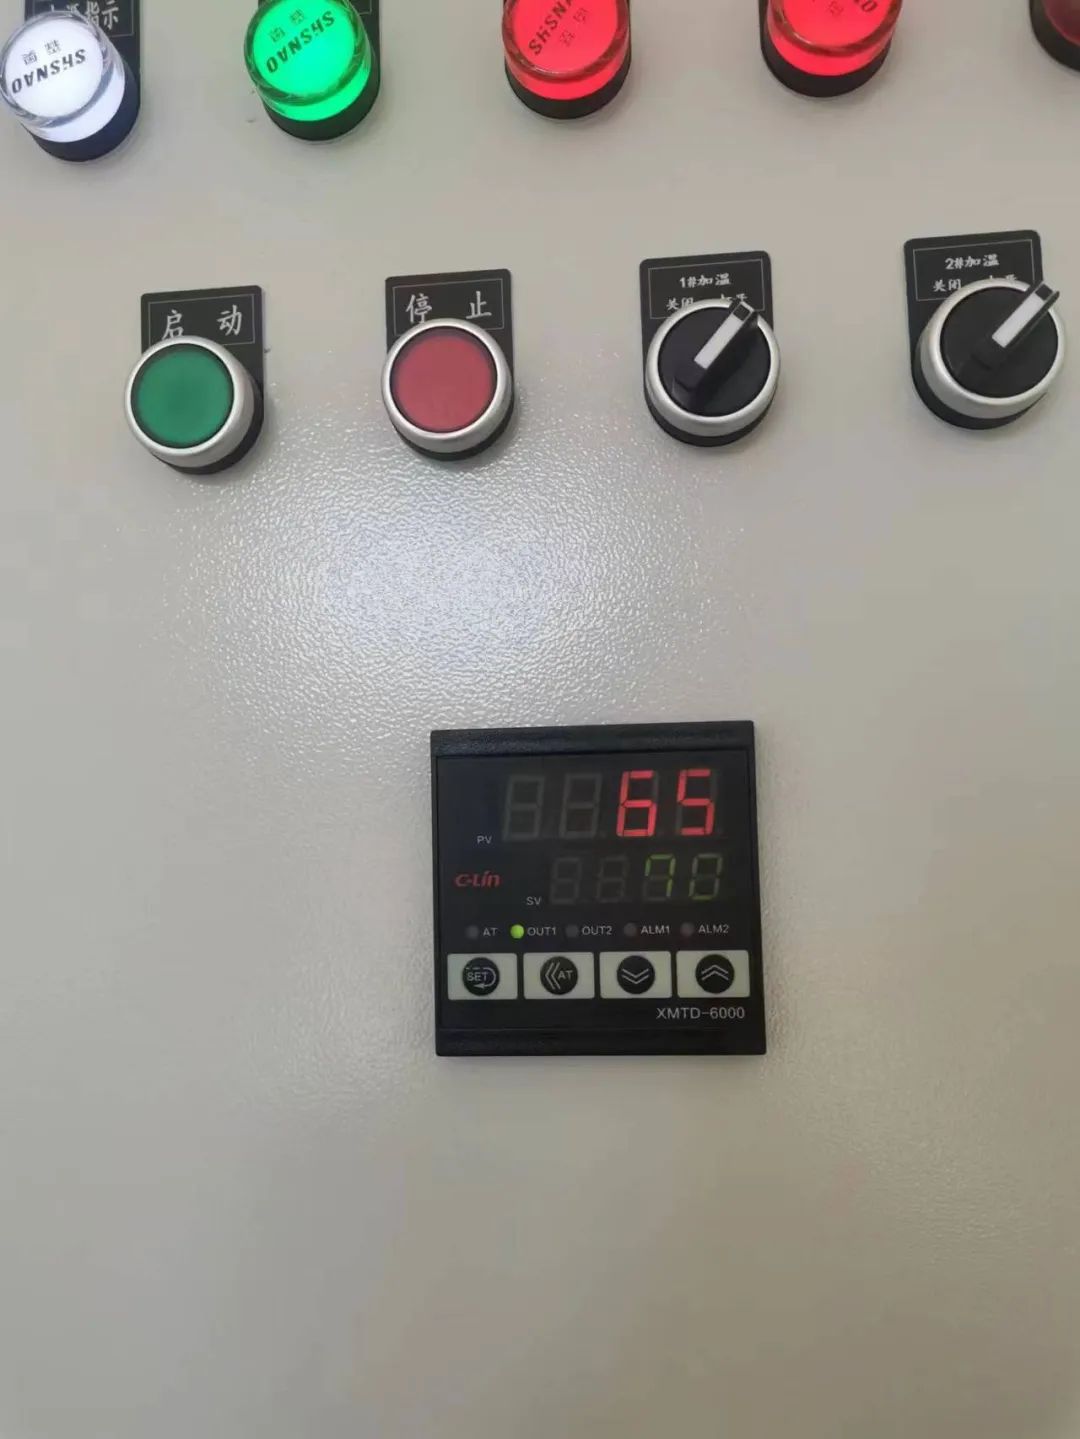 烘干房内显示温度为65度